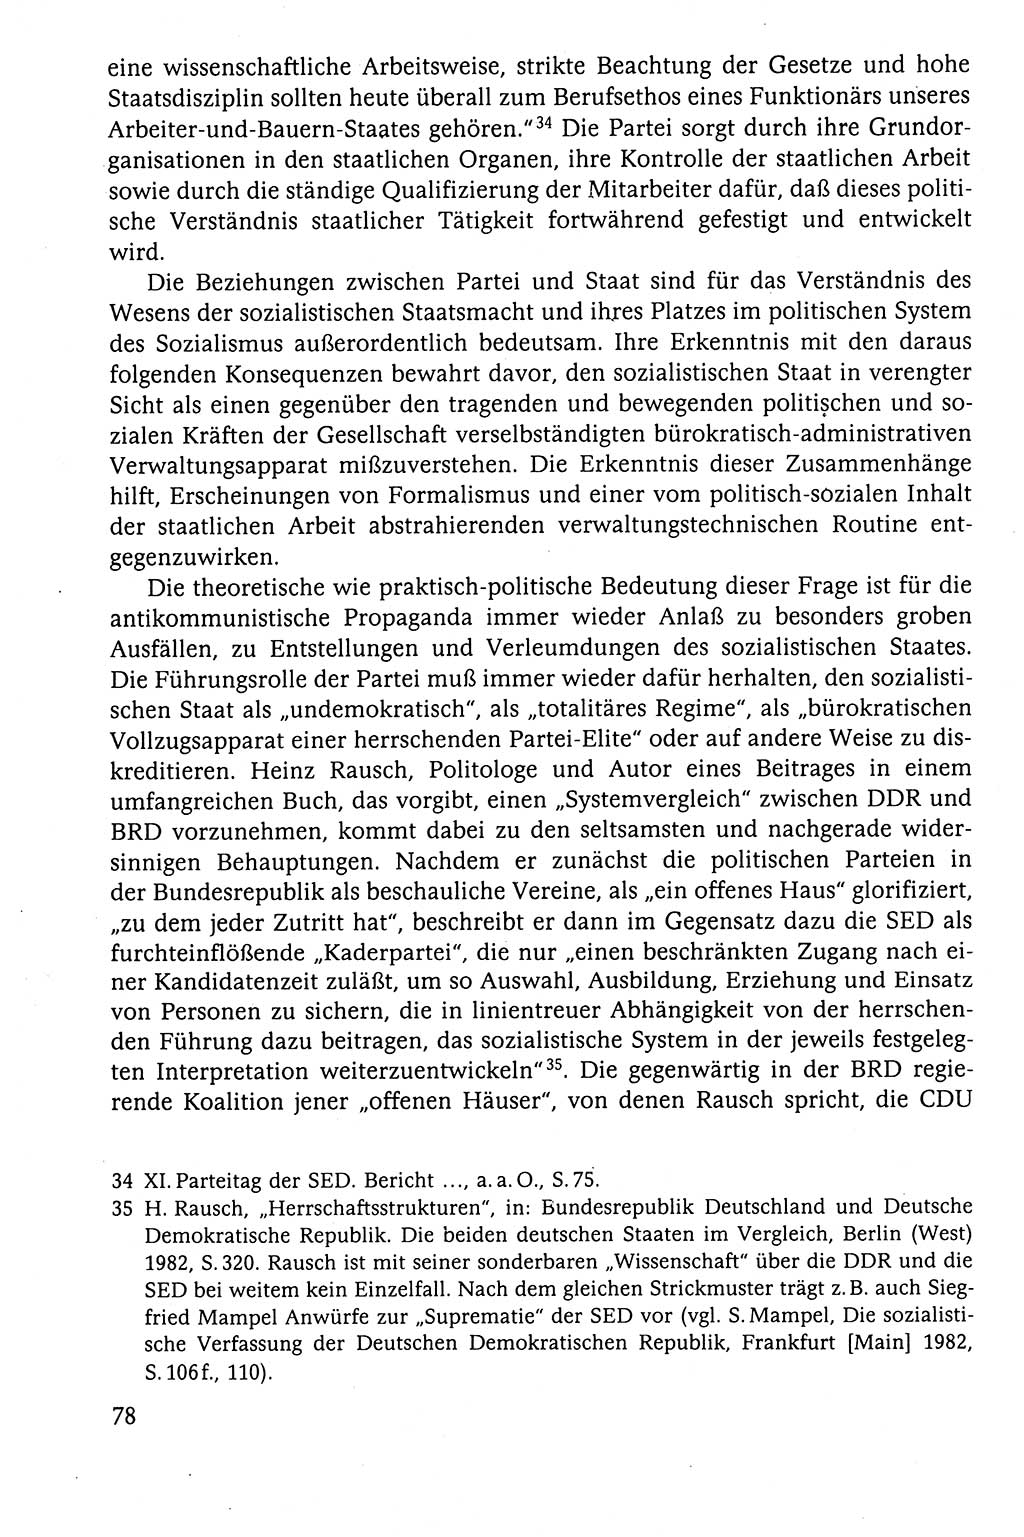 Der Staat im politischen System der DDR (Deutsche Demokratische Republik) 1986, Seite 78 (St. pol. Sys. DDR 1986, S. 78)